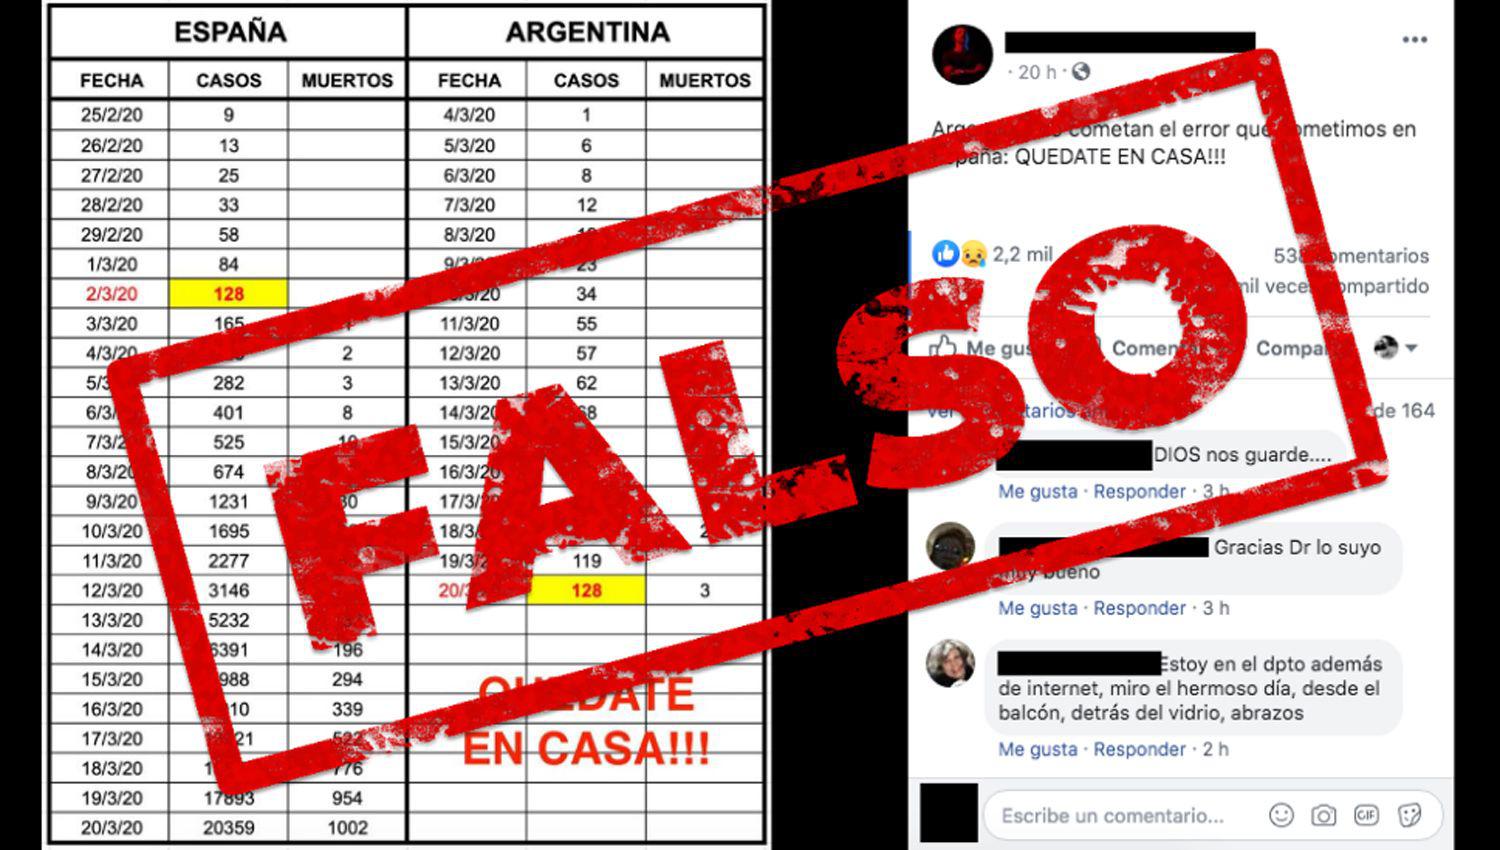 Es falsa la imagen que compara la situacioacuten del coronavirus en Espantildea con la de Argentina